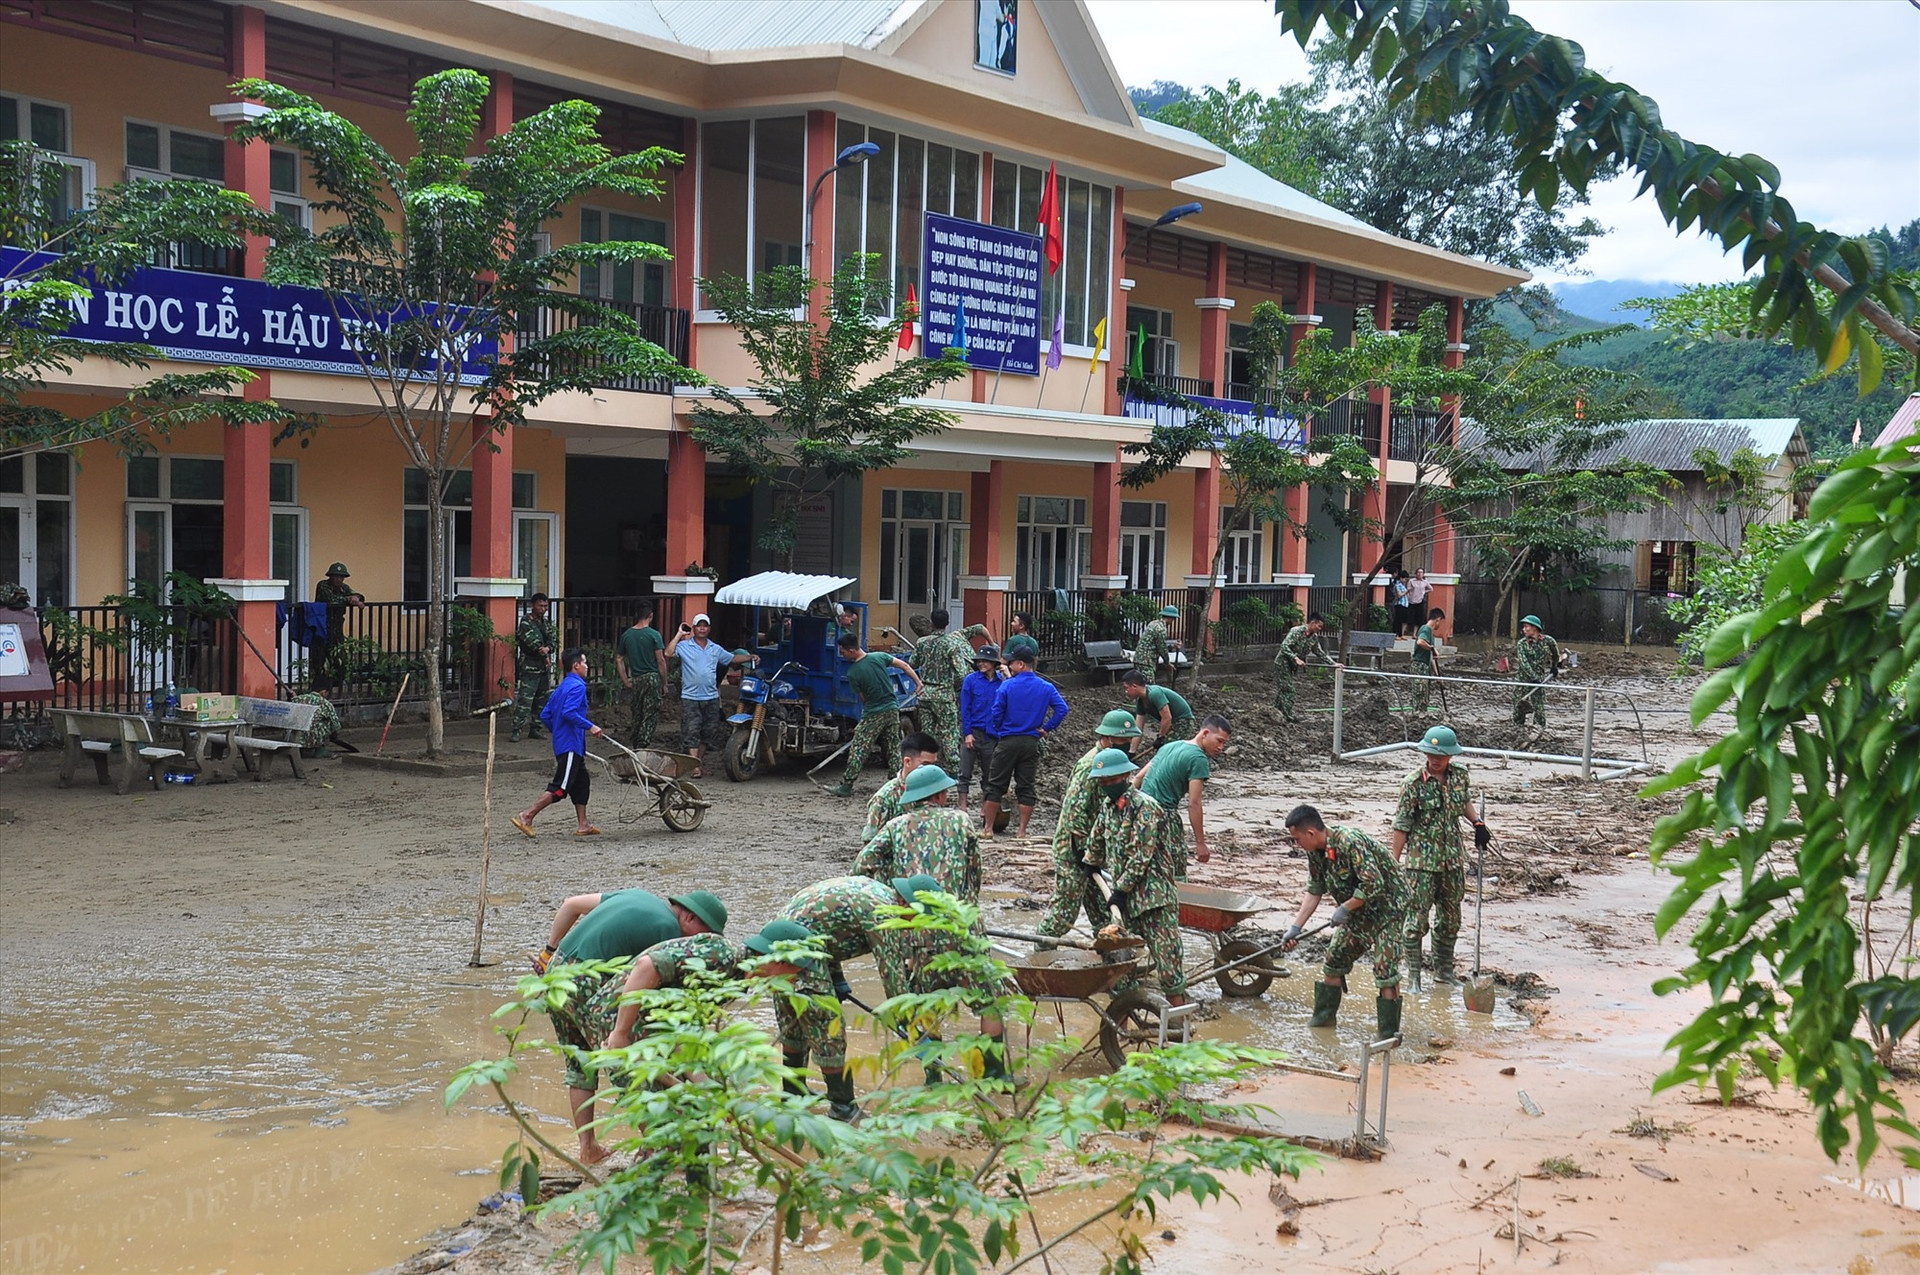 Thanh niên tình nguyện cùng cán bộ, chiến sĩ Sư đoàn 315 dọn vệ sinh giúp Trường Phổ thông dân tộc bán trú tiểu học Trà Leng.